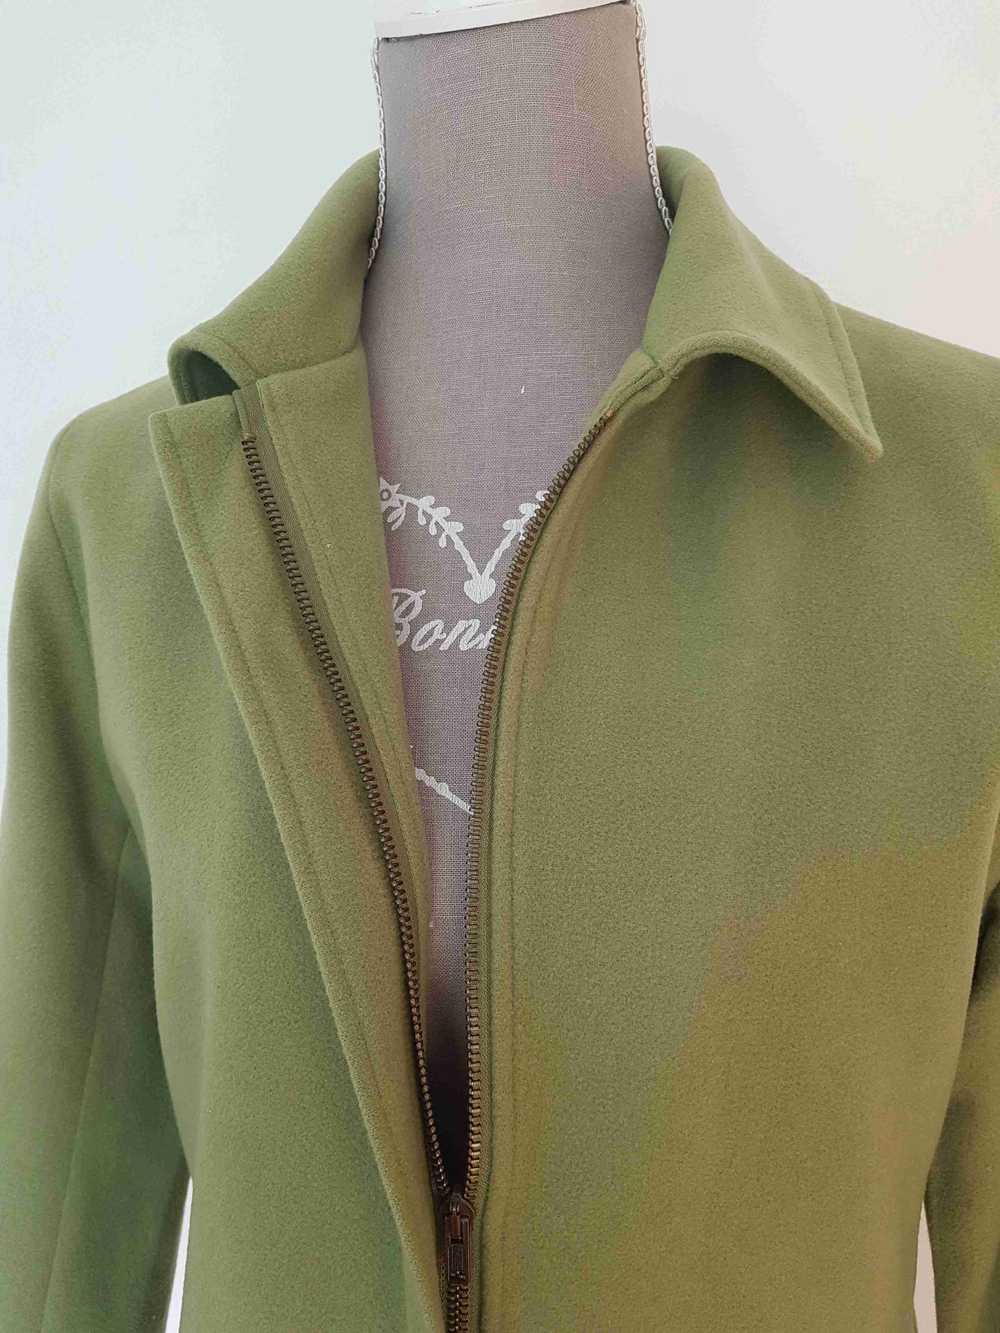 70's jacket - 70's jacket, fleece effect, apple g… - image 5